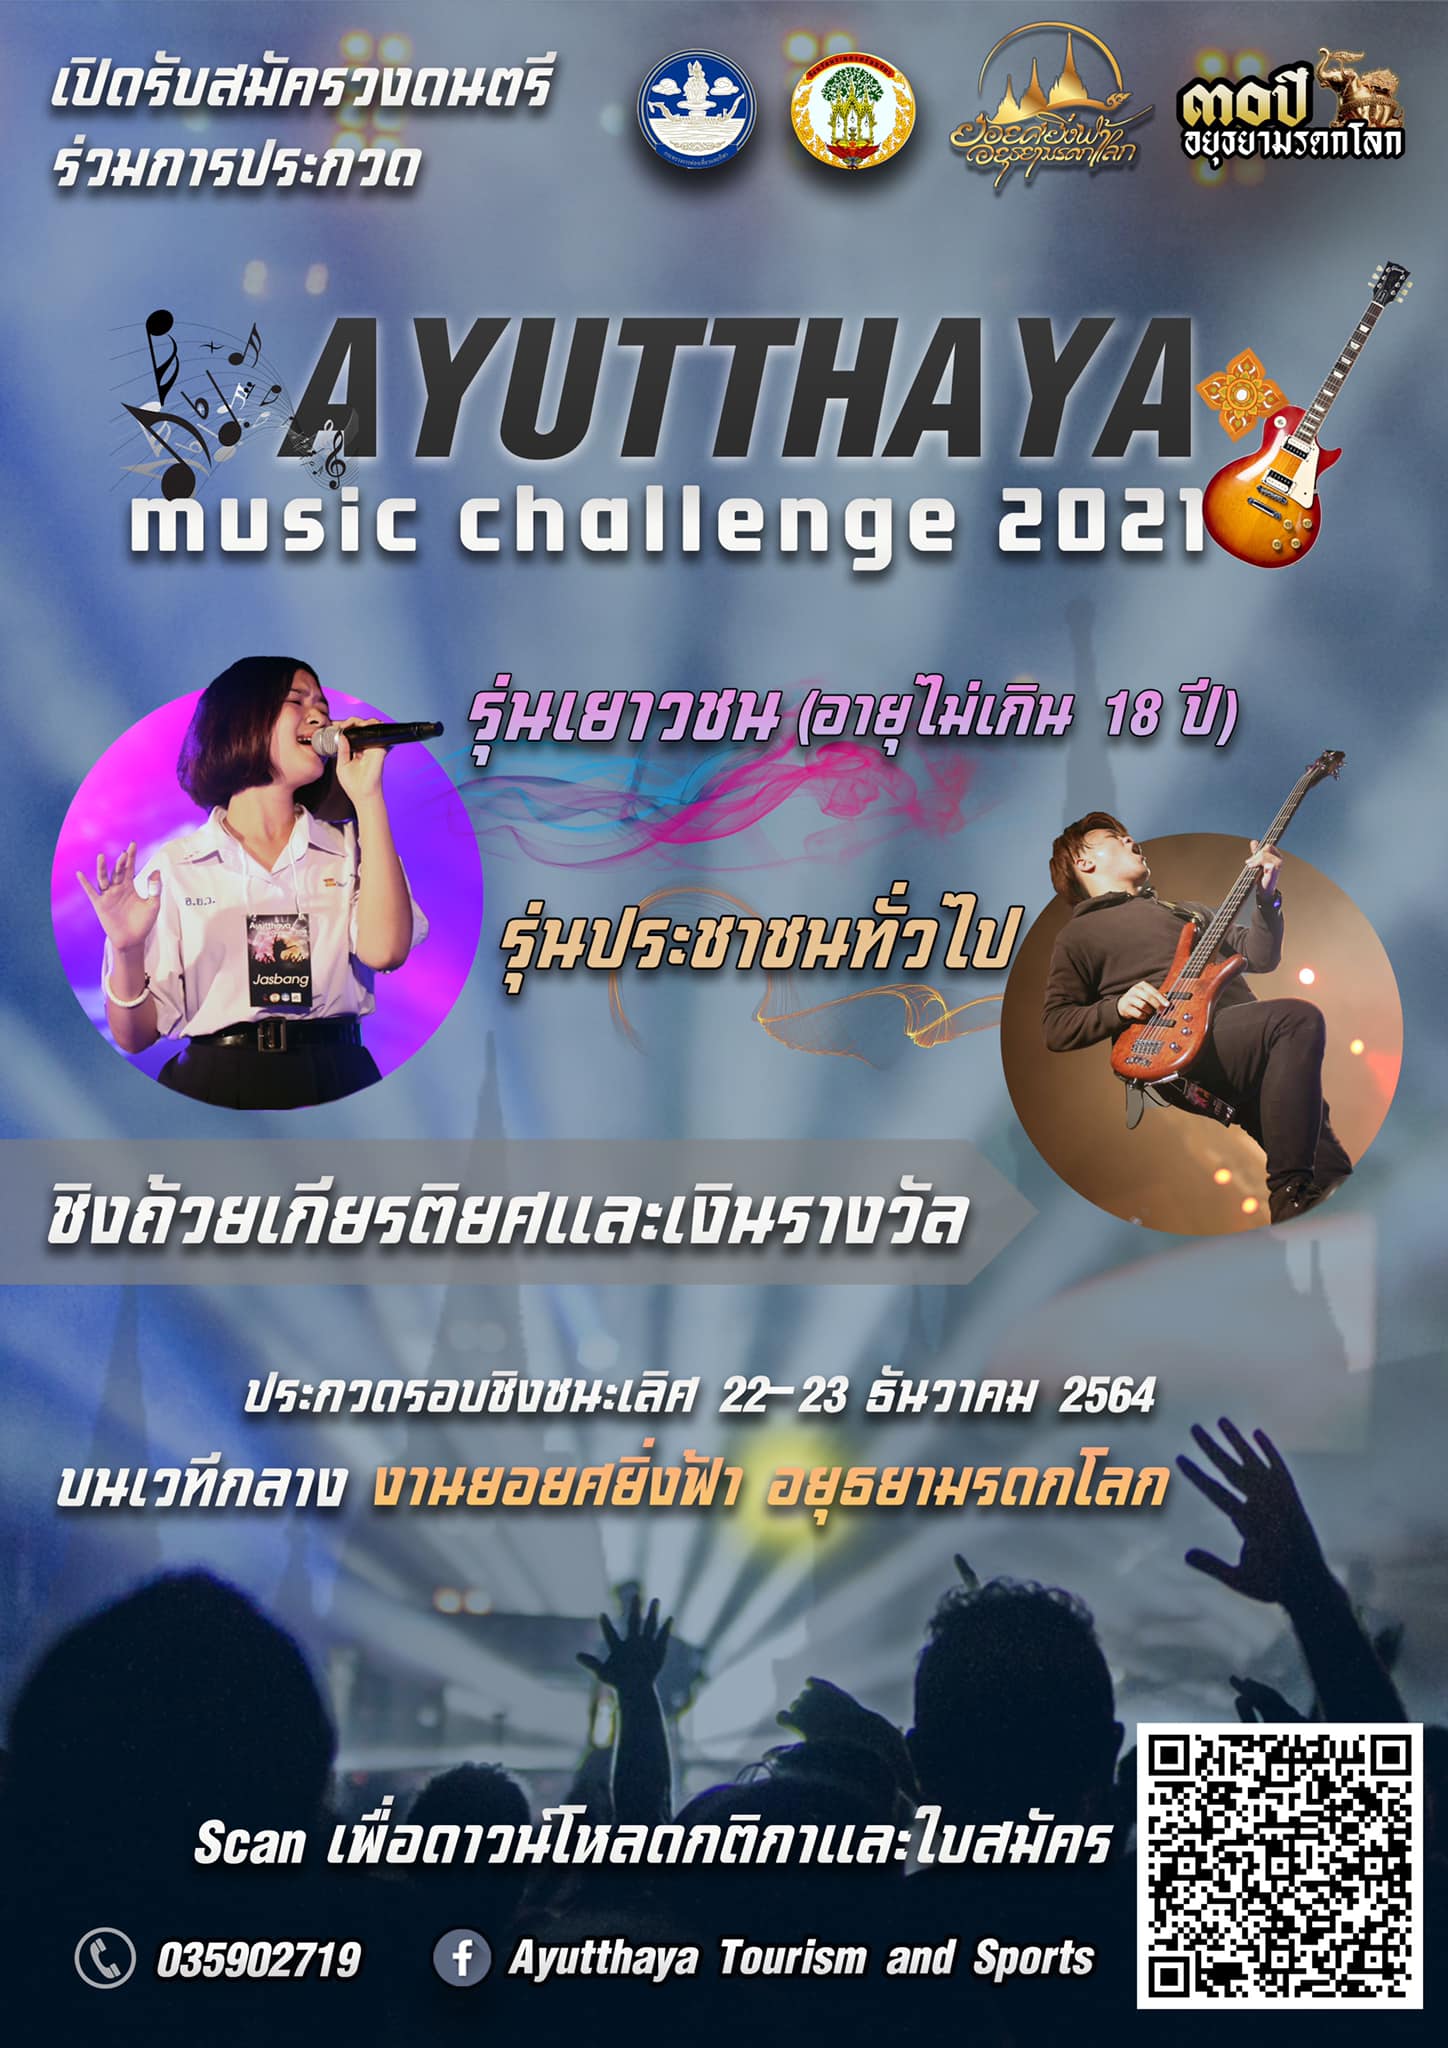 การแข่งขันประกวดวงดนตรี Ayutthaya Music Challenge 2021